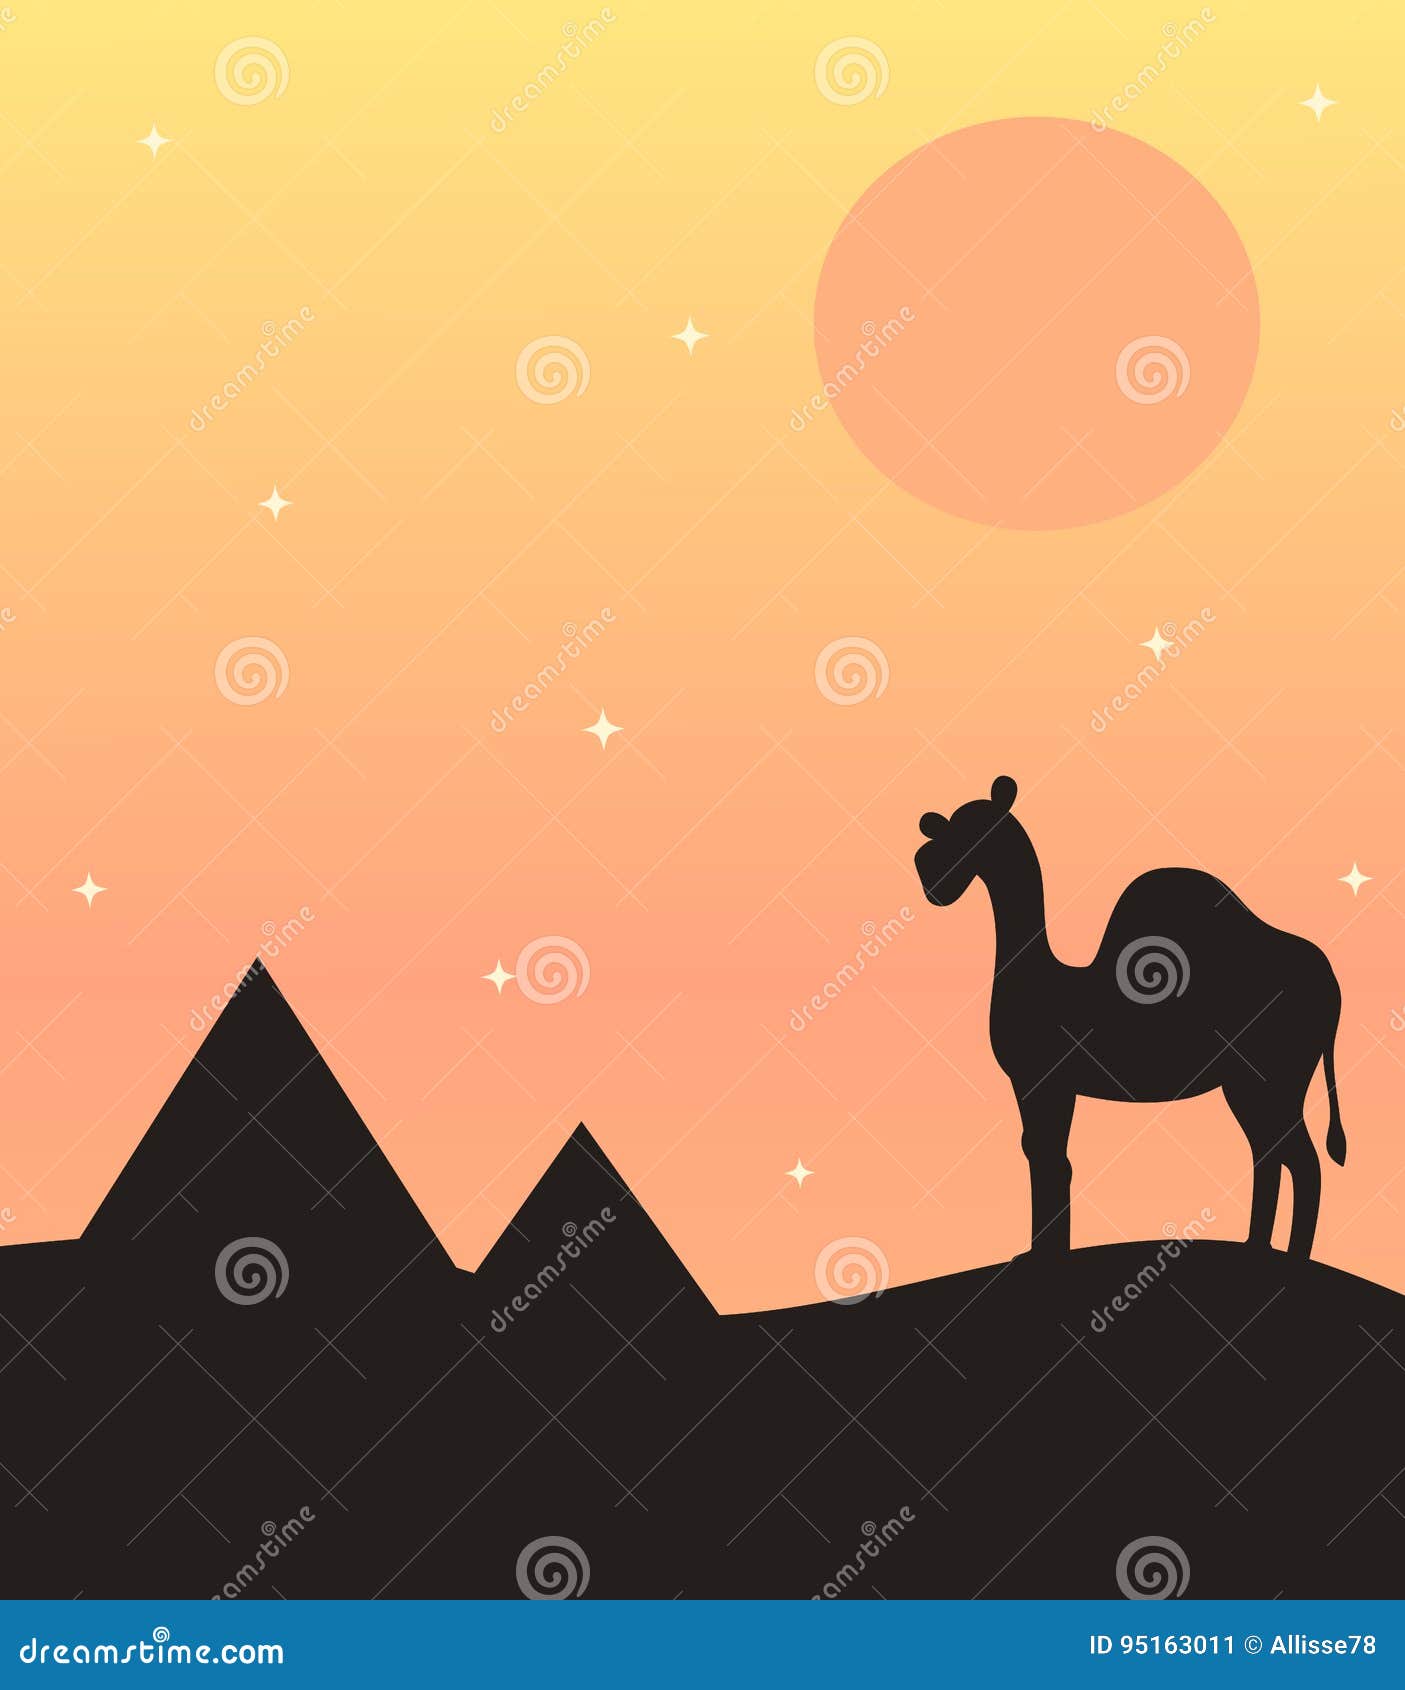 与骆驼独峰驼剪影的逗人喜爱的日落背景在沙漠和金字塔. 与骆驼独峰驼剪影的日落背景在沙漠和金字塔